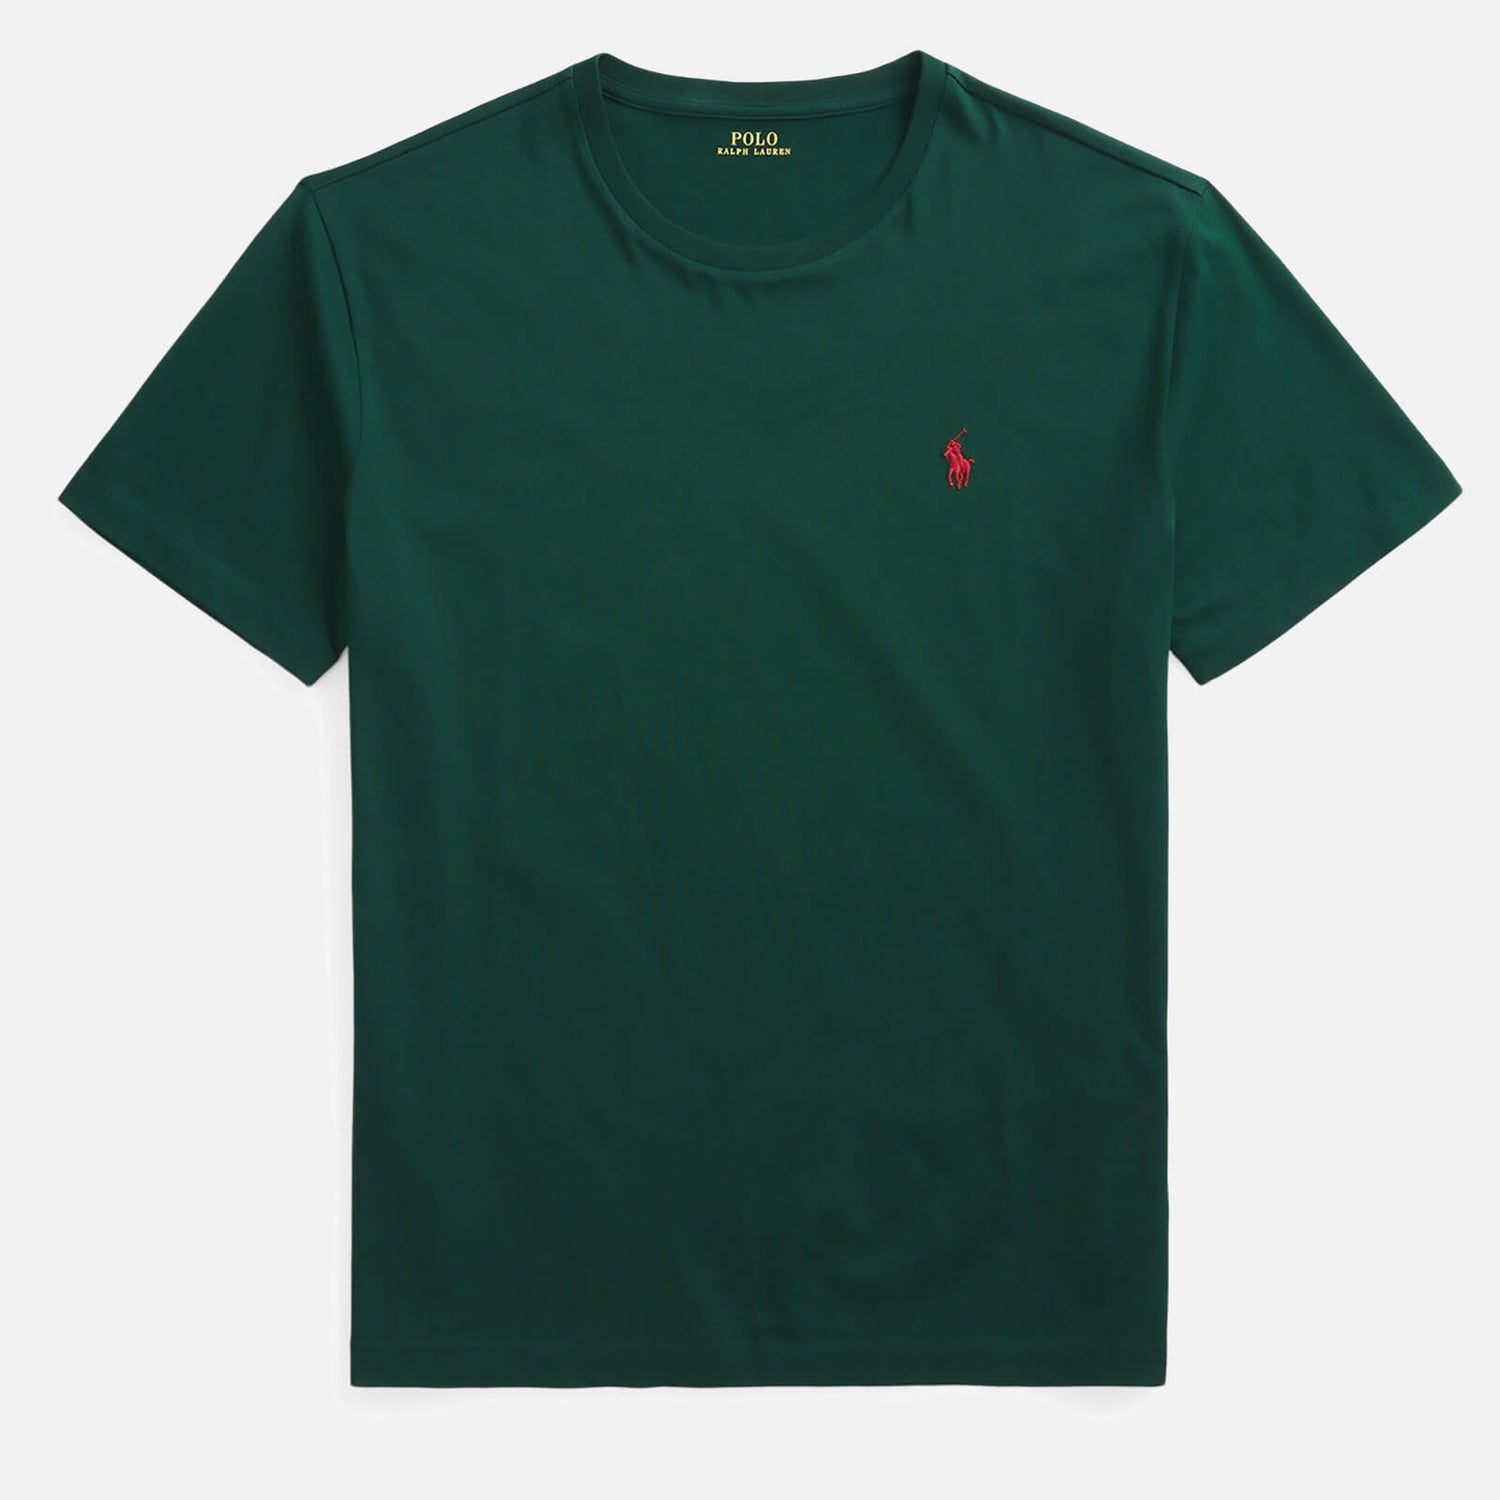 Polo Ralph Lauren Men's Custom Fit Jersey T-Shirt - College Green